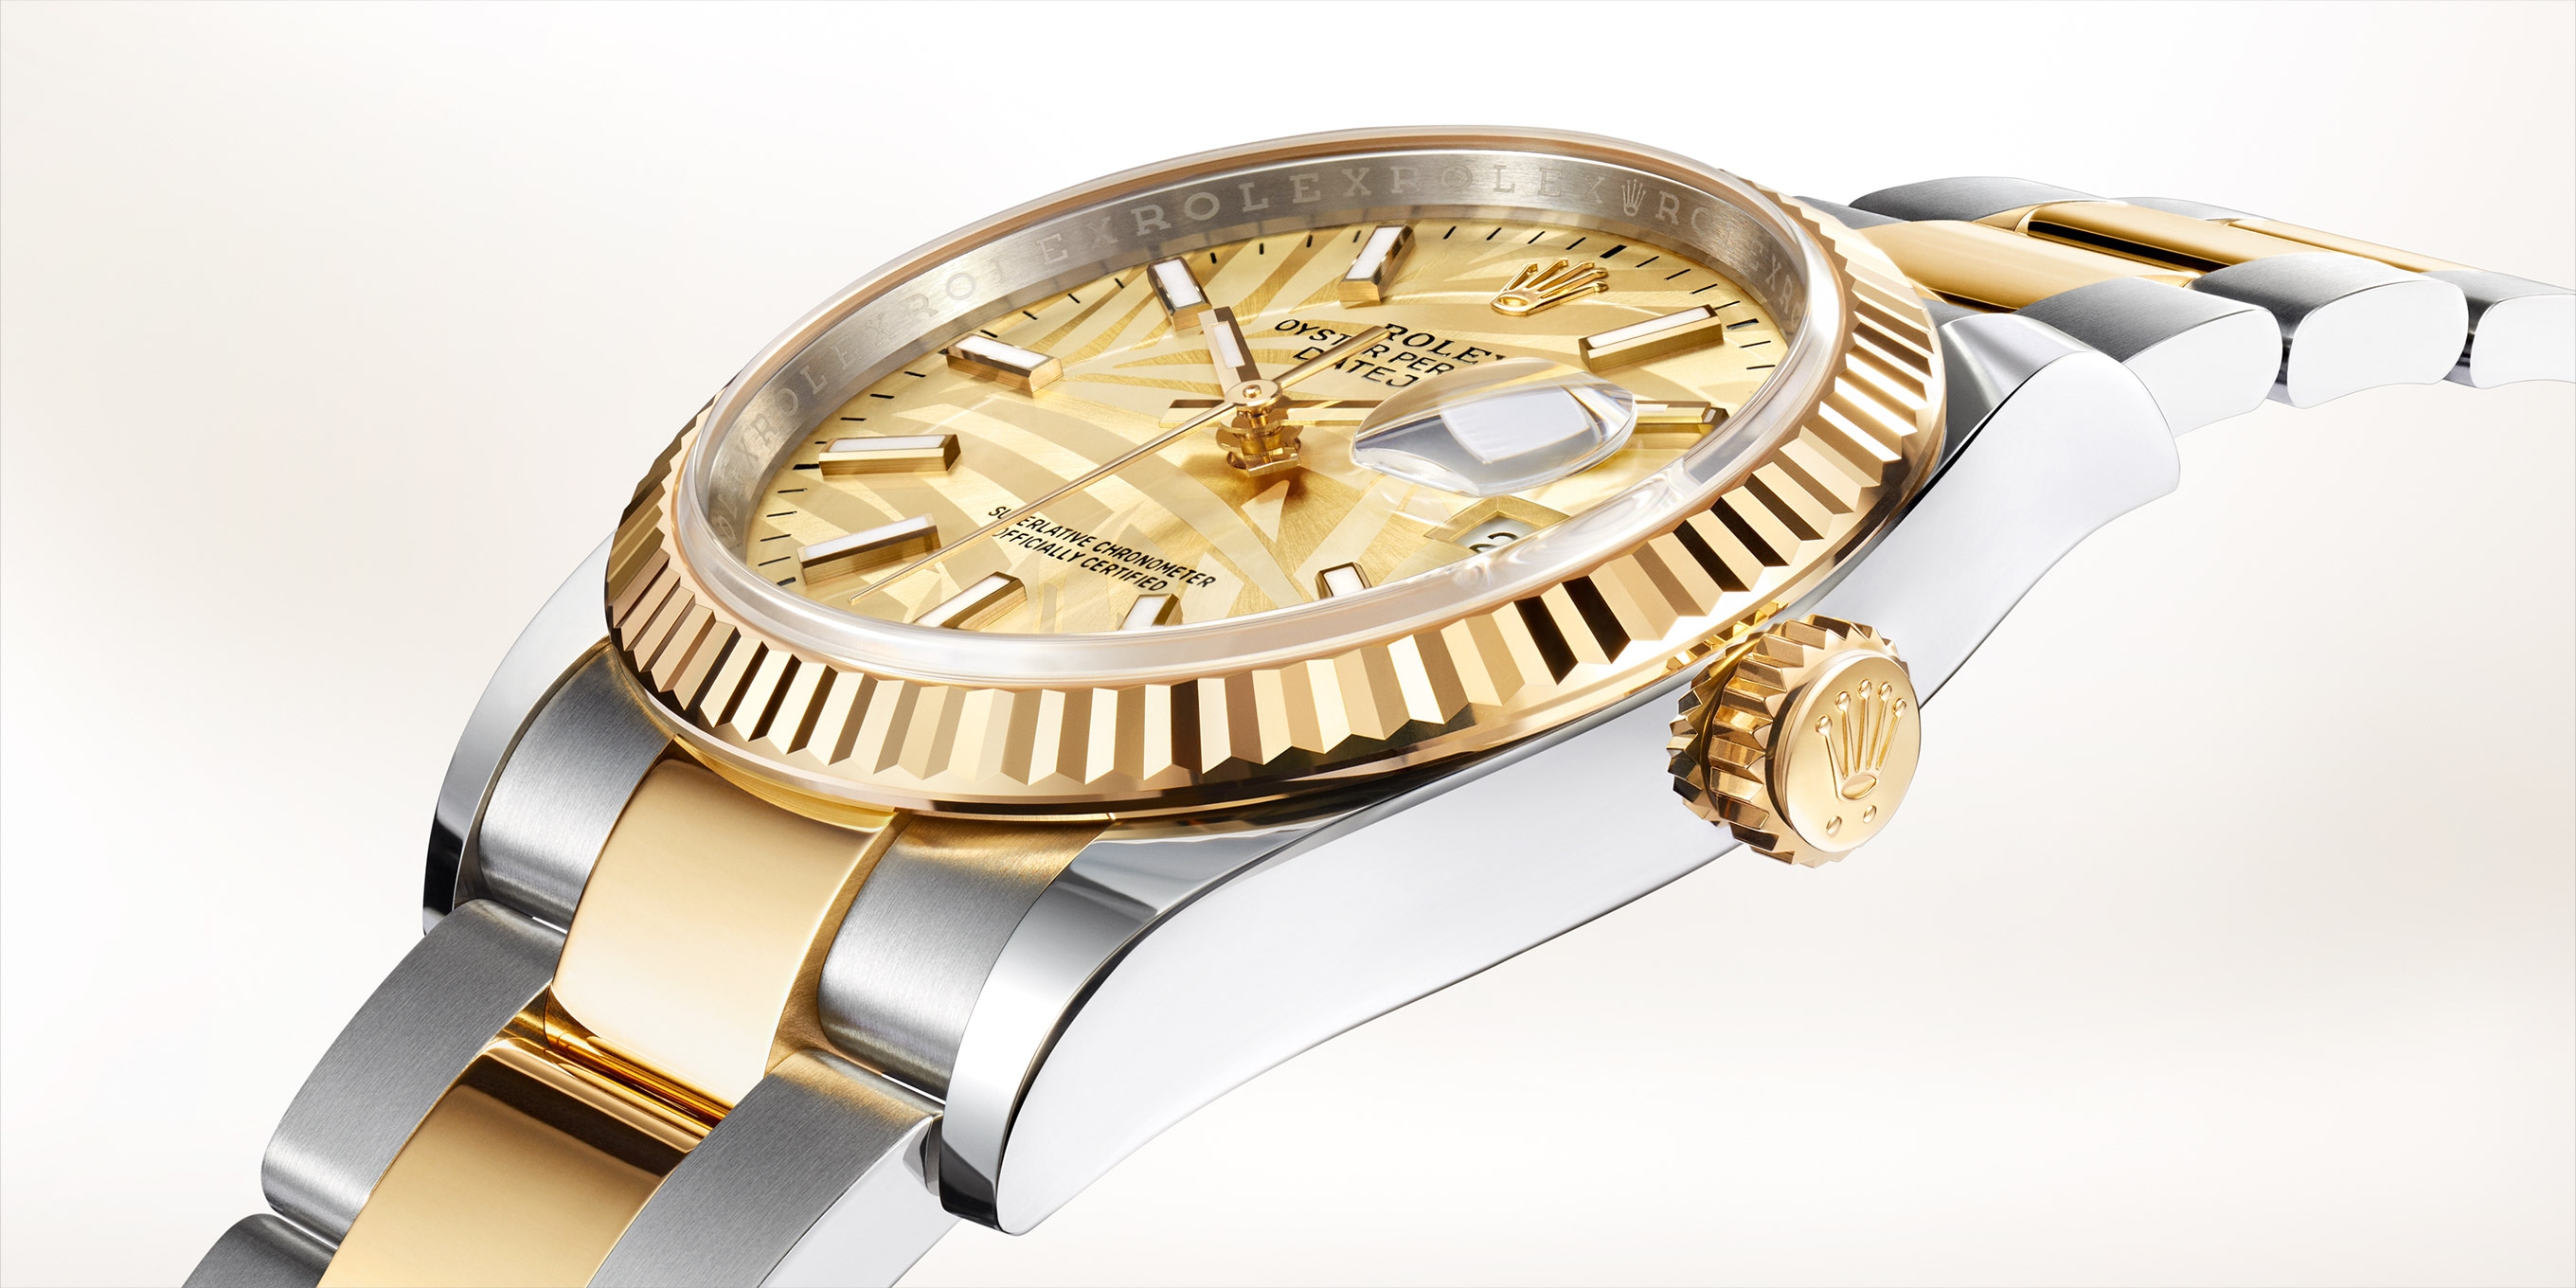 Rolex Datejust 18k Rose Gold/Steel Silver Jubilee Diamond Dial 36mm Watch 116231